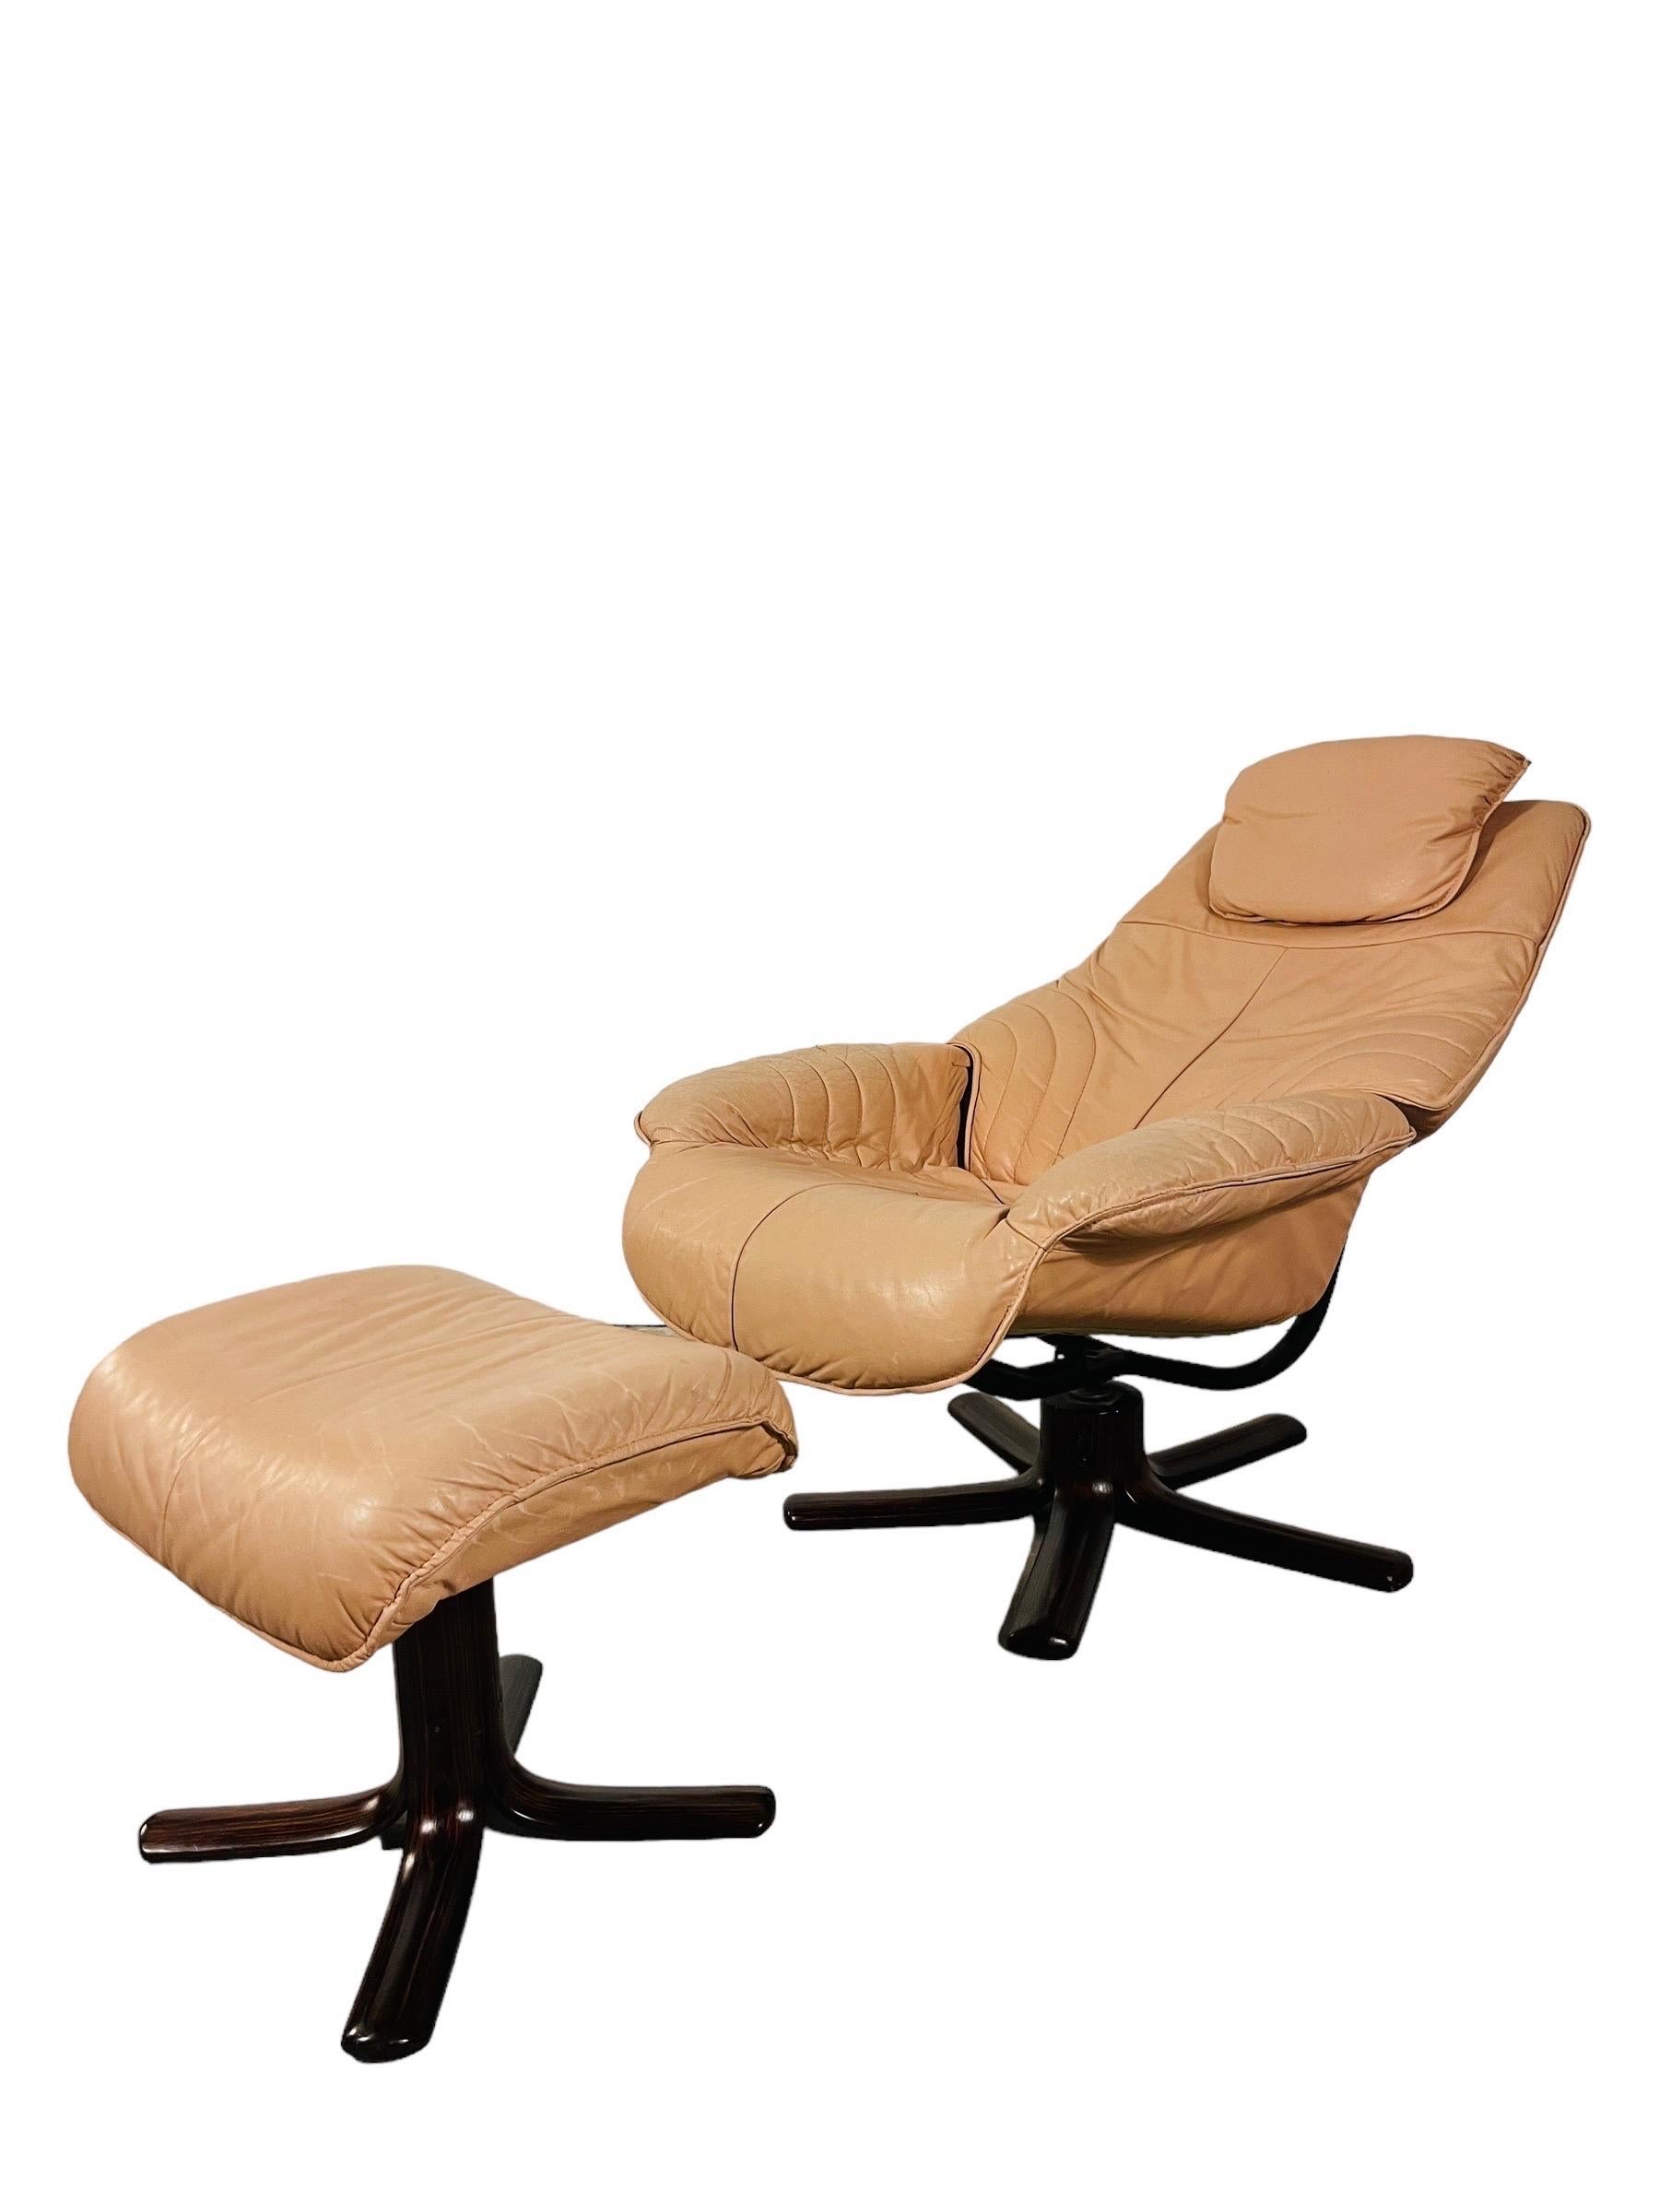 Betreten Sie das Reich des klassischen norwegischen Designs mit diesem Hjellegjerde-Loungesessel aus Leder und Ottomane im Vintage-Stil. Dieses in Norwegen gefertigte Ensemble ist der Inbegriff von Luxus und Komfort. Die geschmeidige,